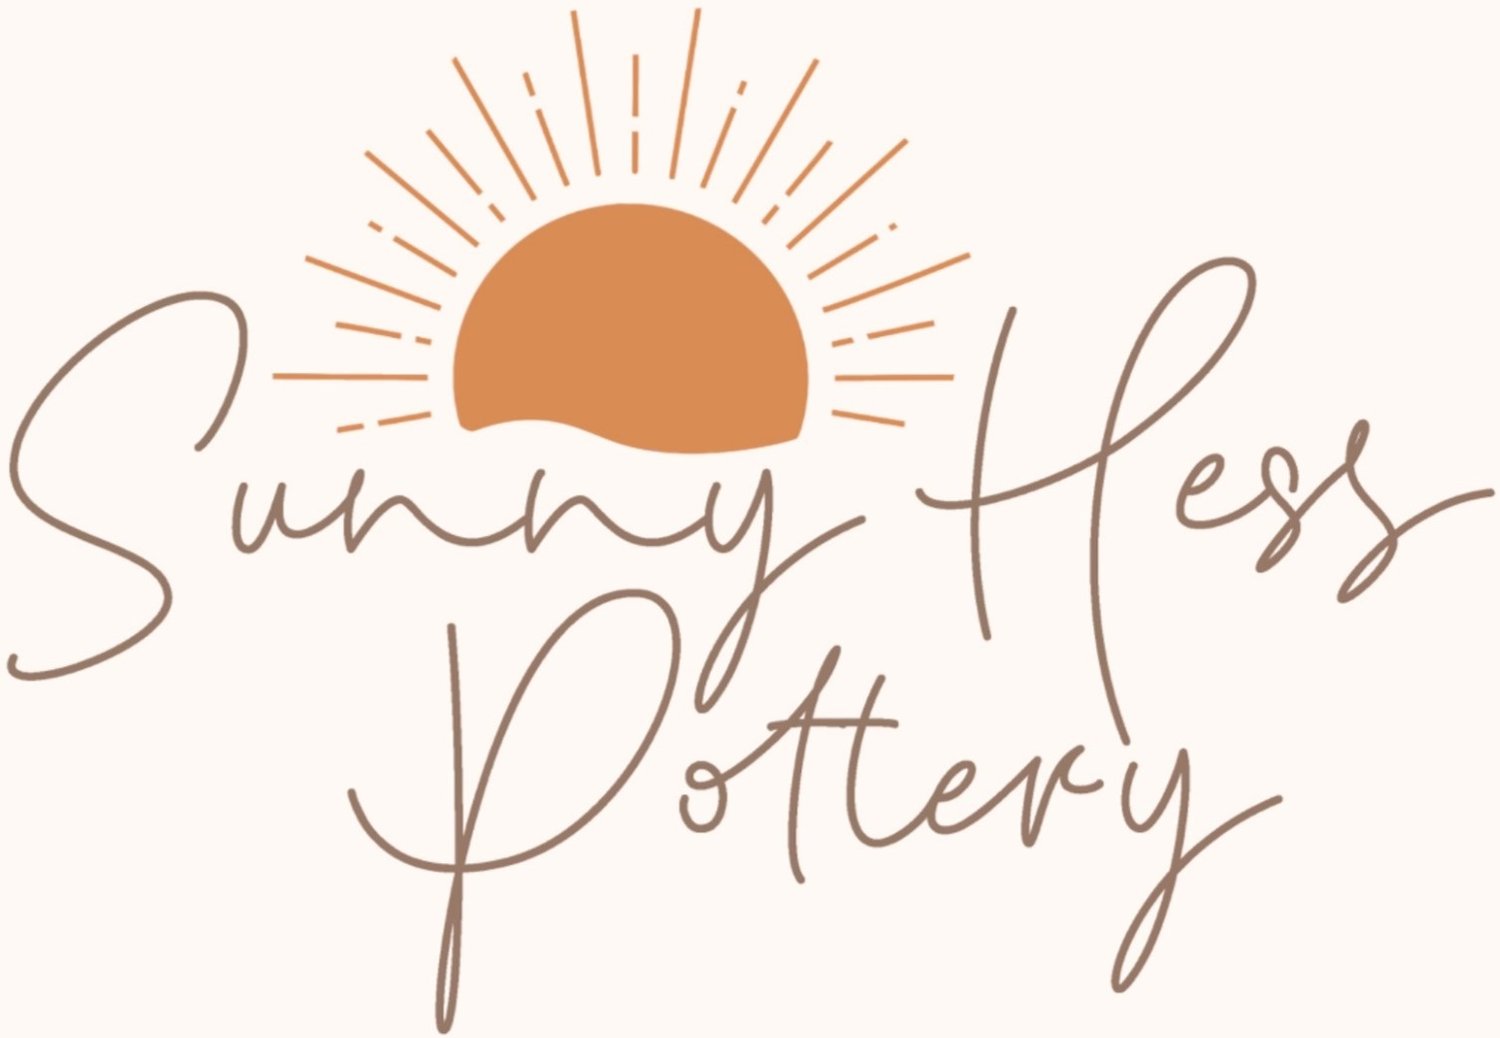 Sunny Hess Pottery